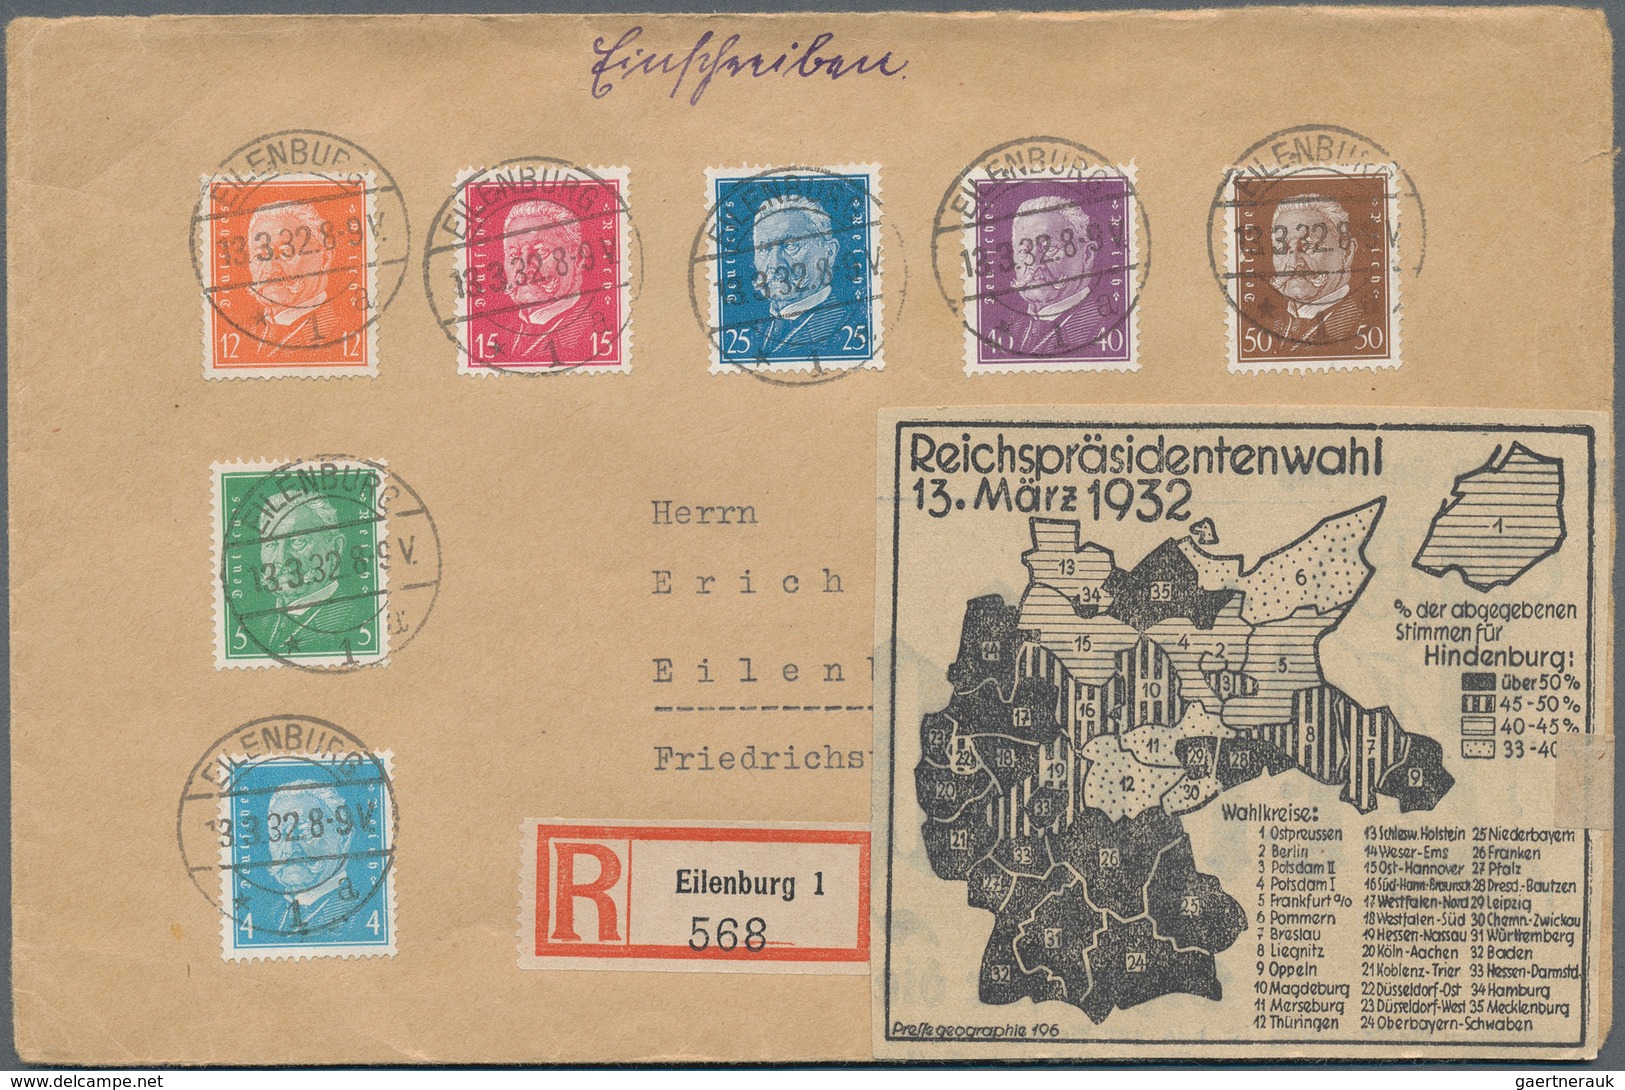 29946 Deutschland: 1845/1949 ca., interessanter Posten mit ca.400 Belegen in drei Briefalben, dabei Materi